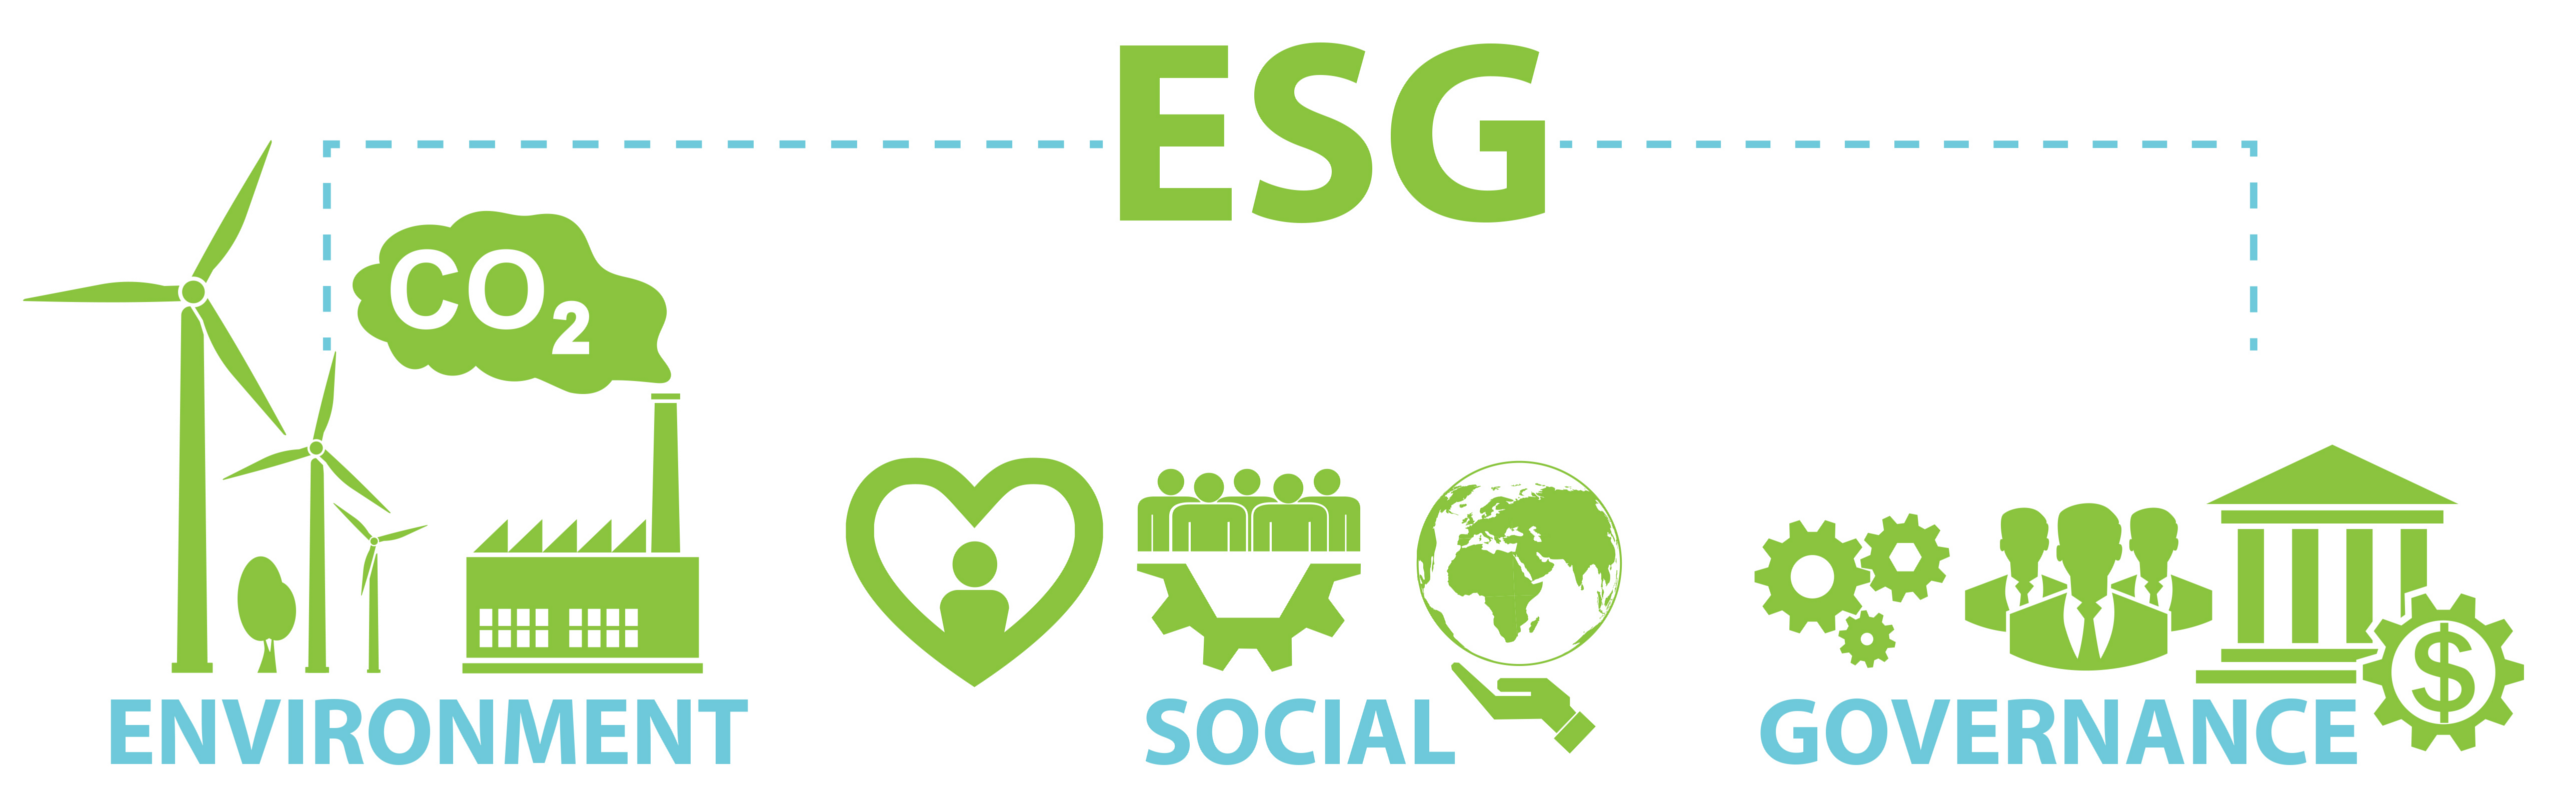 Esg b. ESG проекты. ESG логотип. ESG концепция. ESG экология.